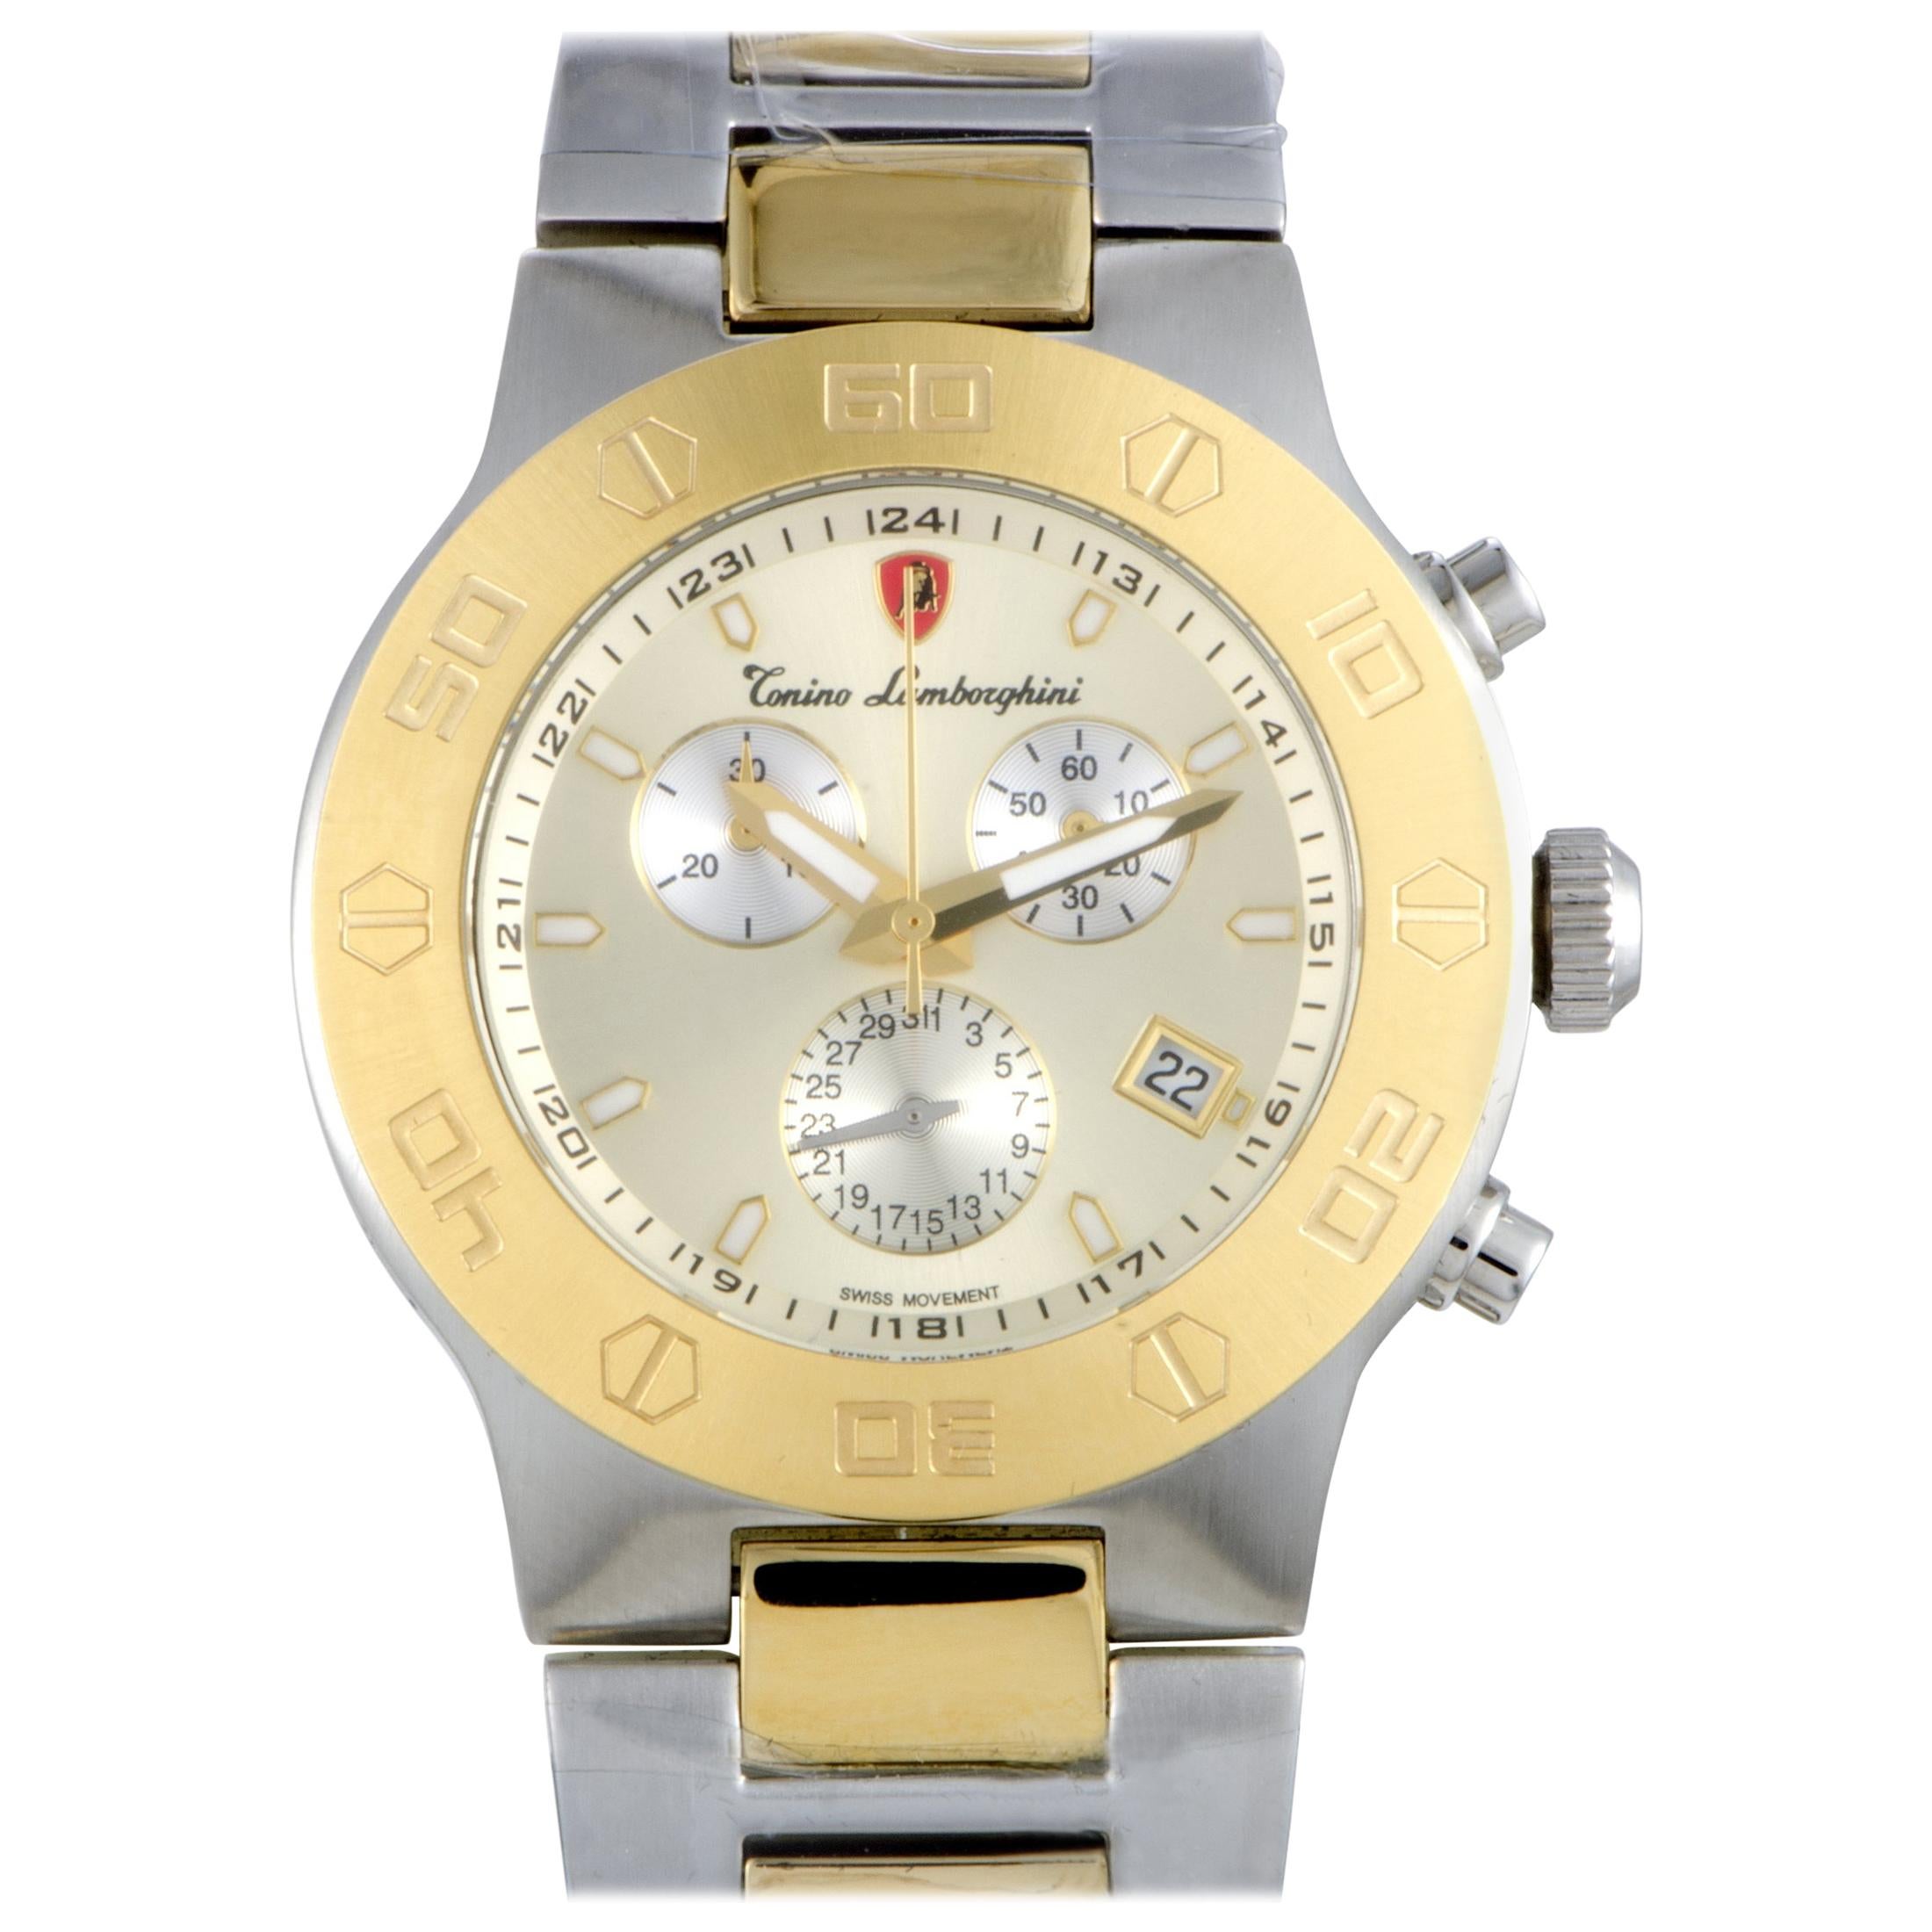 Tonino Lamborghini EN Models Men's Quartz Chronograph Watch EN034.306